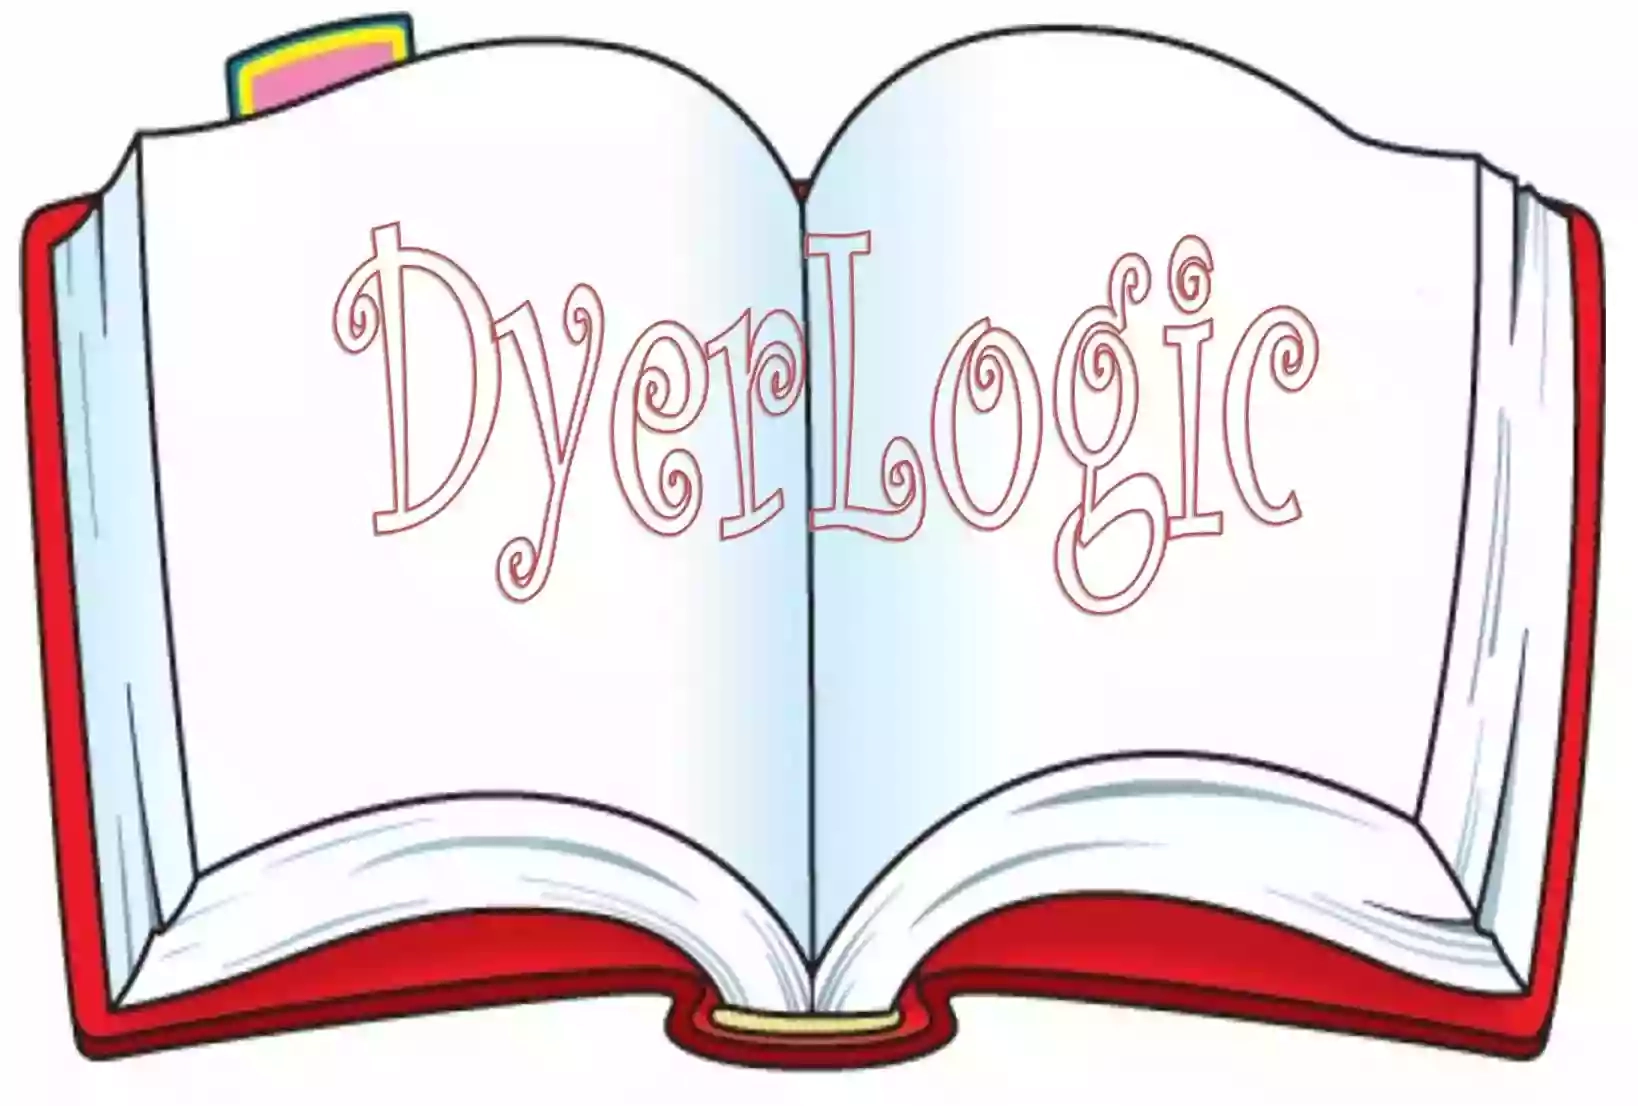 DyerLogic